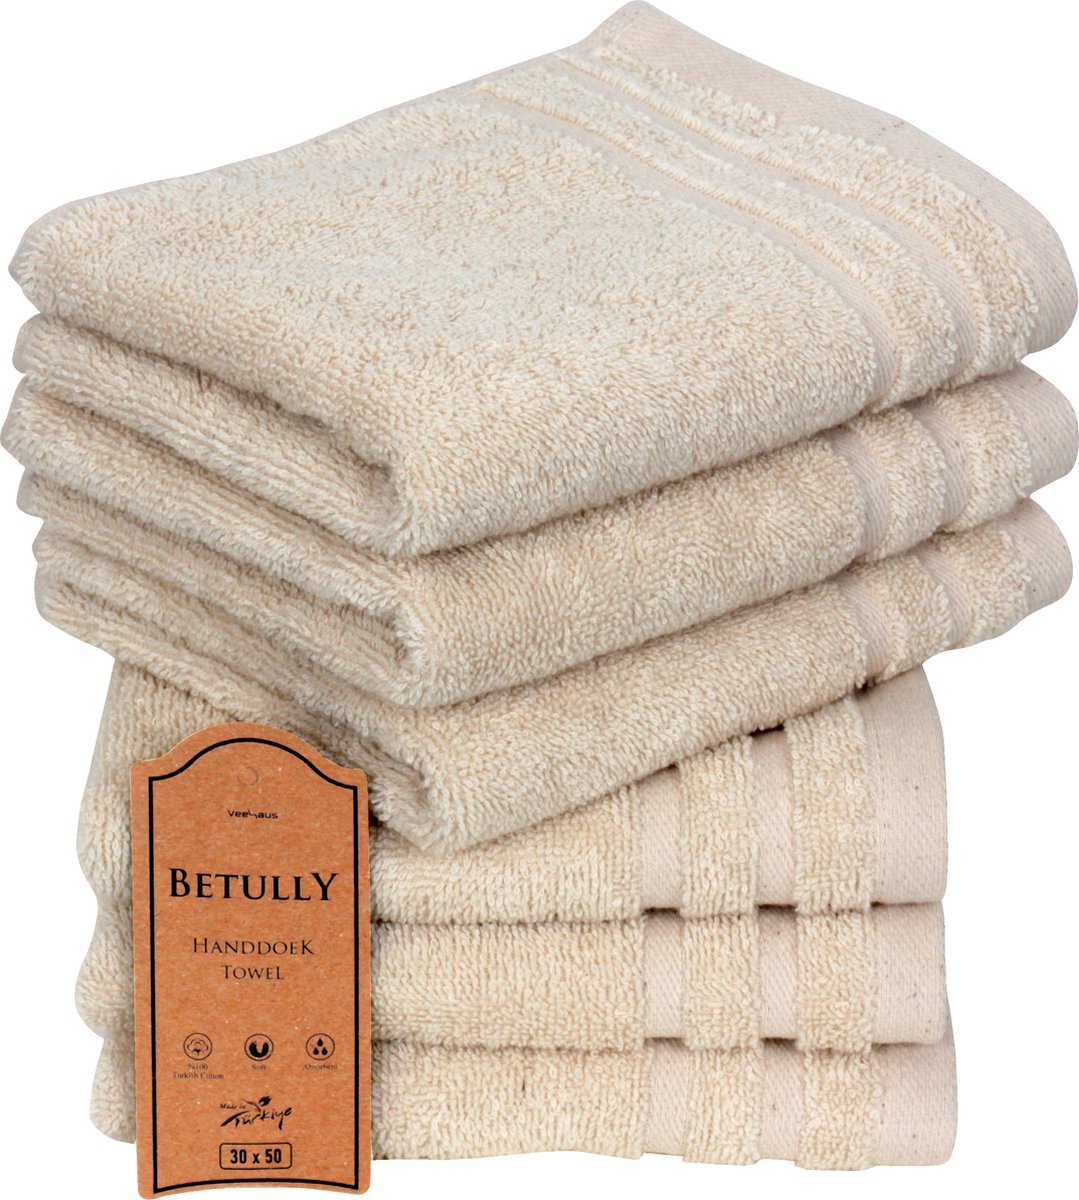 Betully ® - Handdoeken 30 x 50 cm - set van 6 - Hotelkwaliteit – Zware kwaliteit 500 g/m2 Natuur Creme